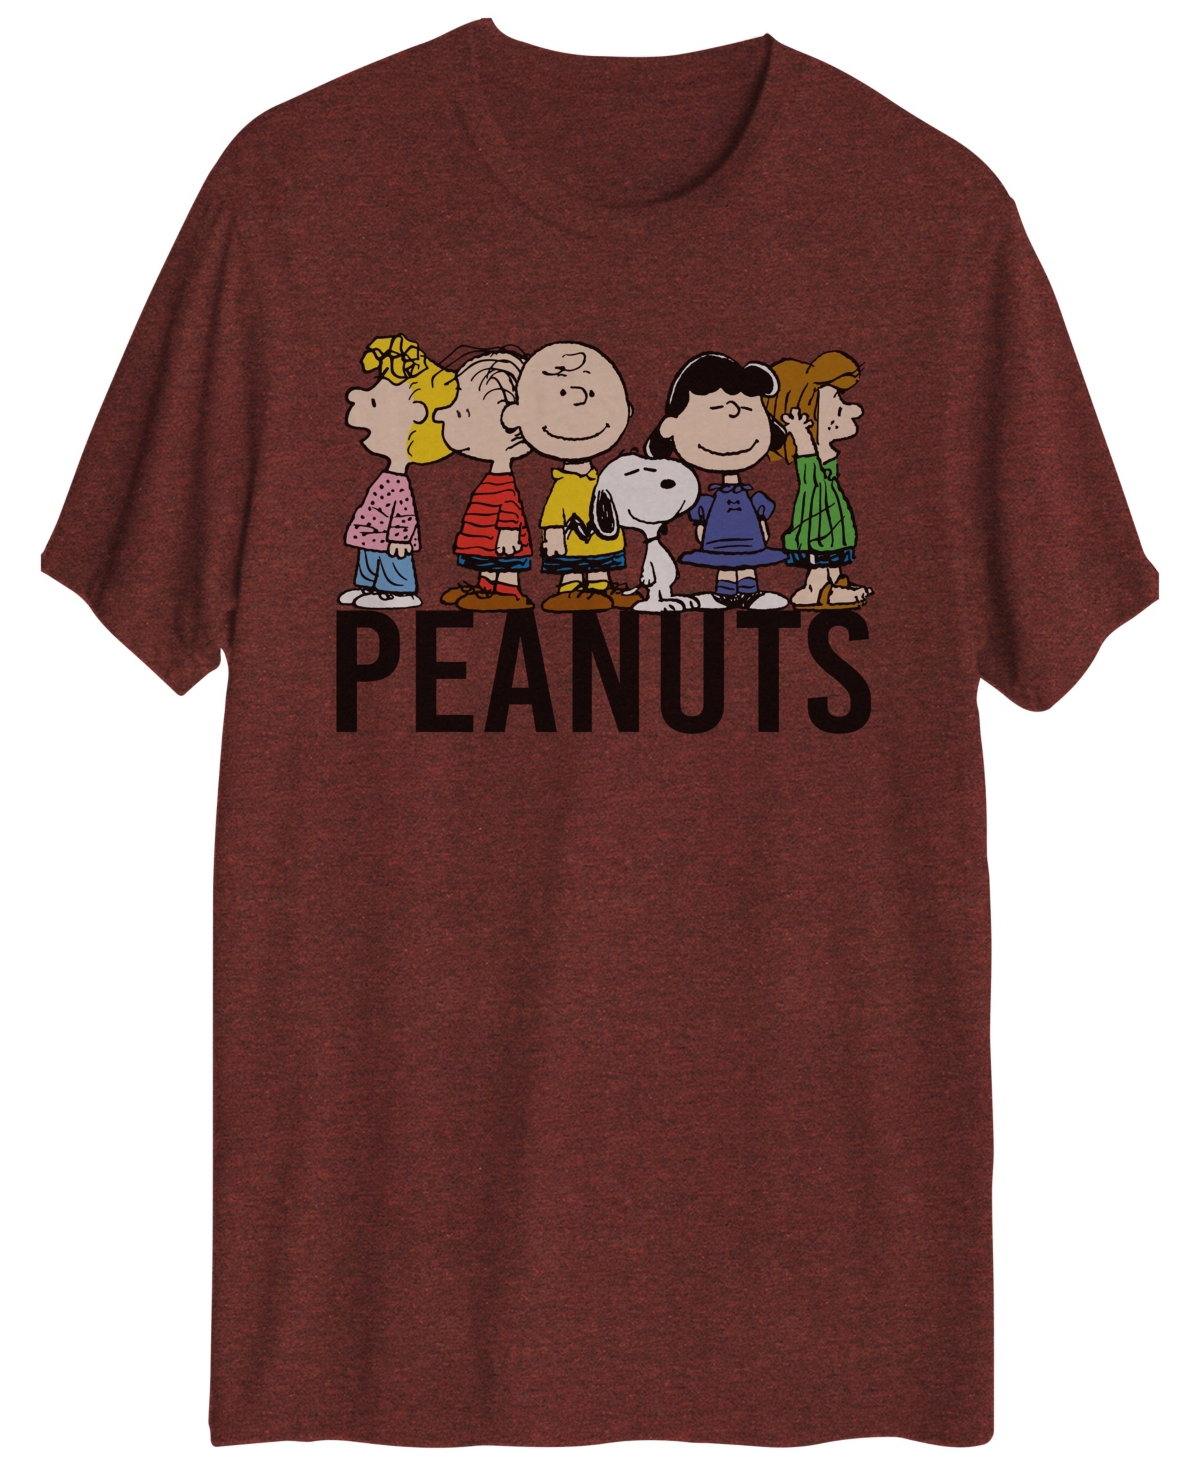 Men's Peanuts Short Sleeve T-shirt - Red